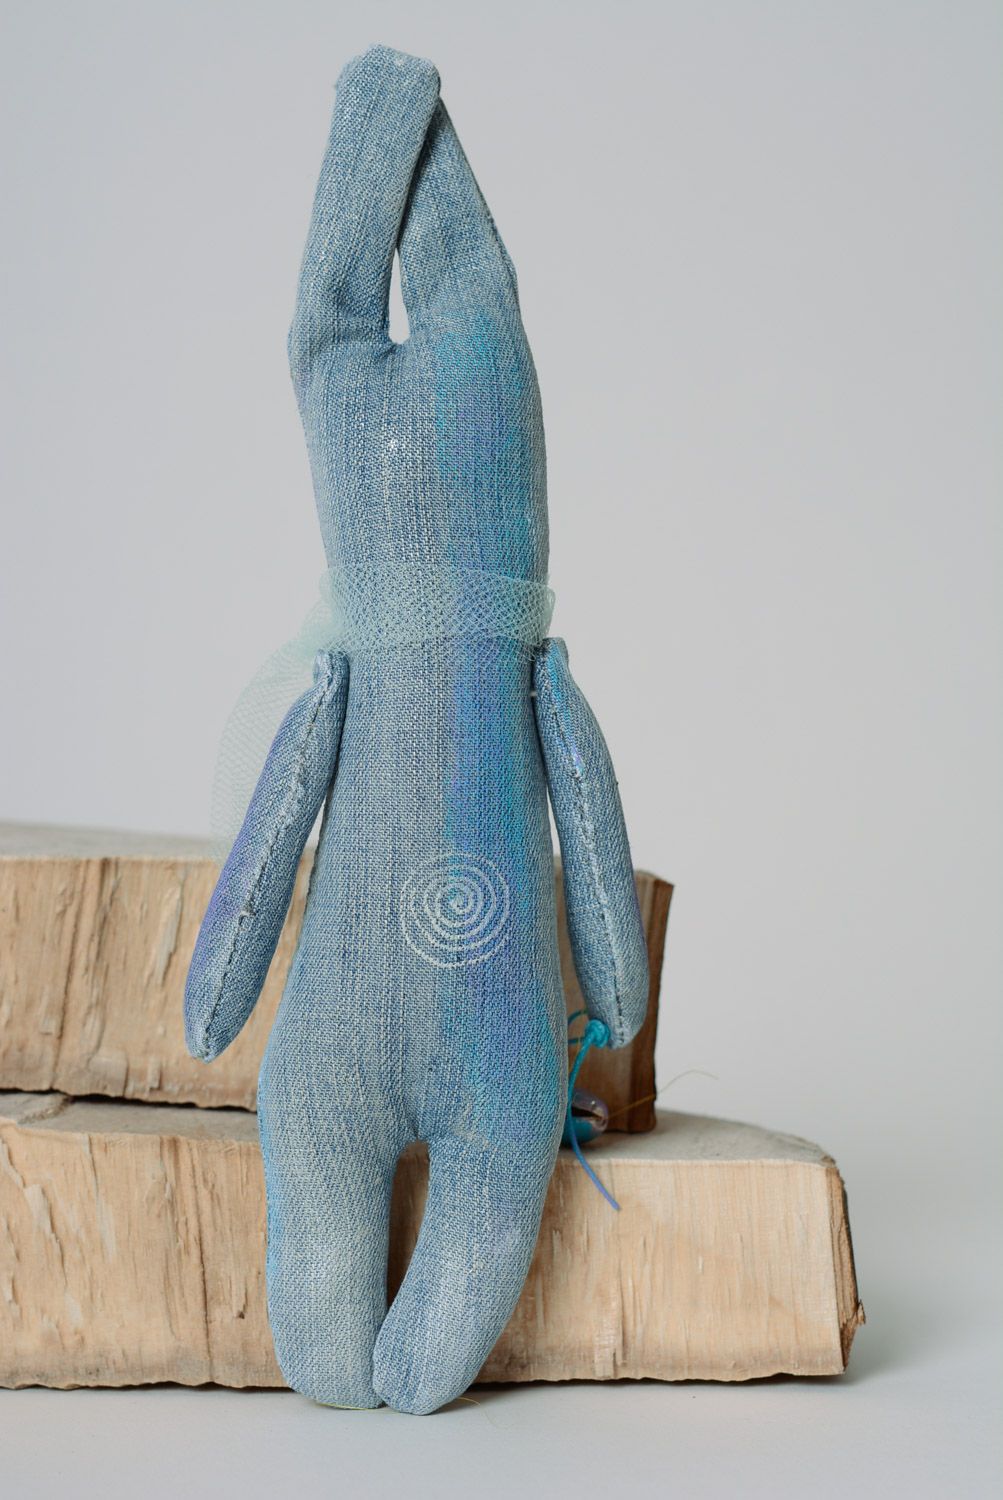 Petite peluche décorative en jean bleue peinte faite main hypoallergénique  photo 5